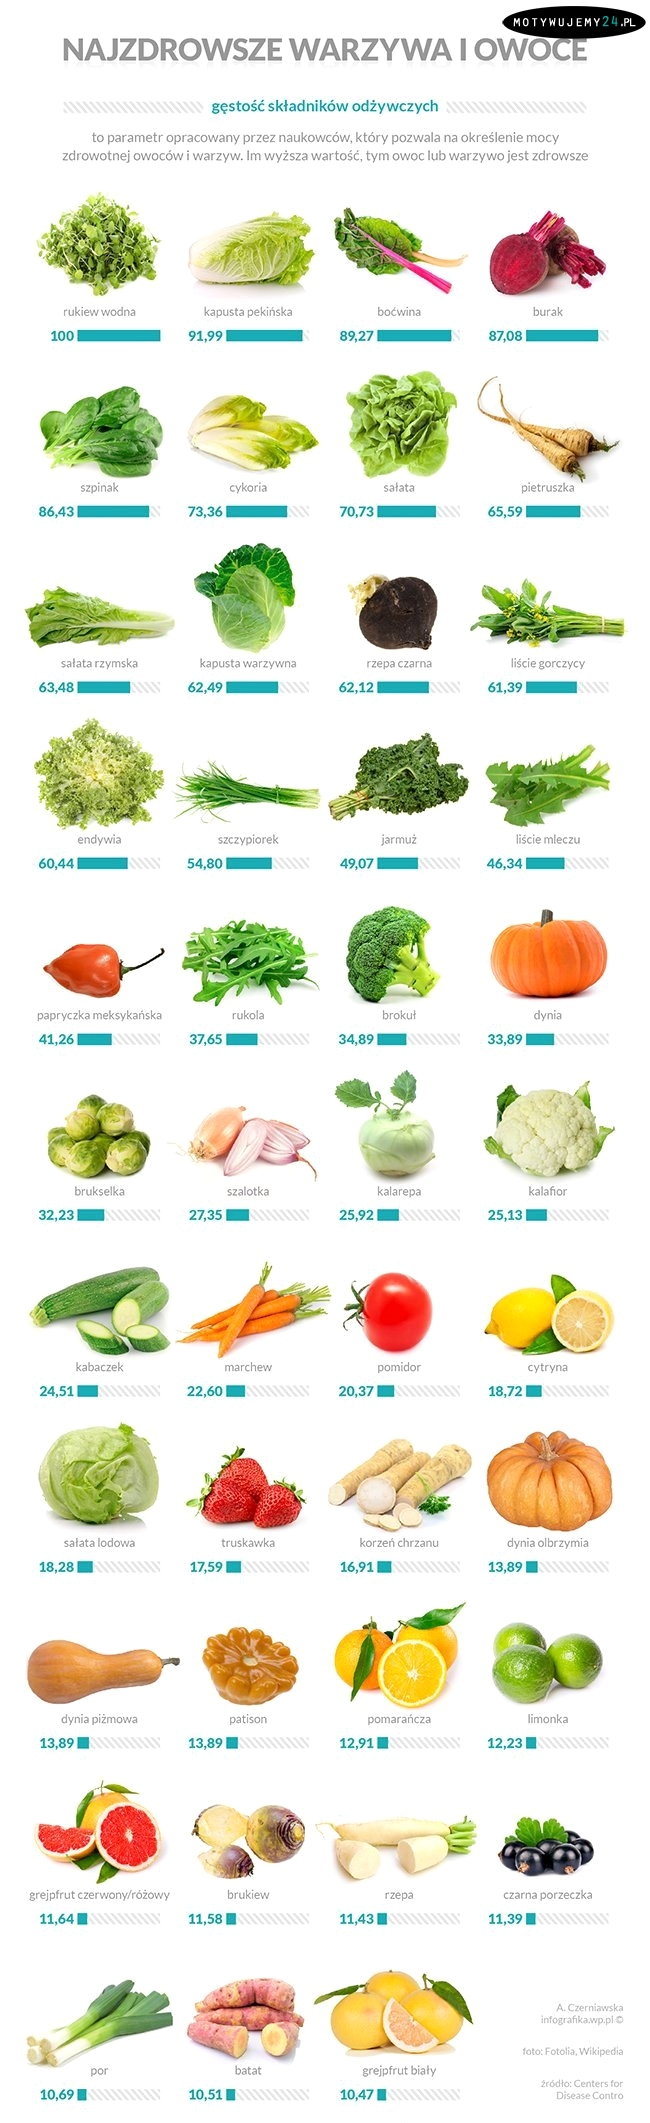 Najzdrowsze warzywa i owoce